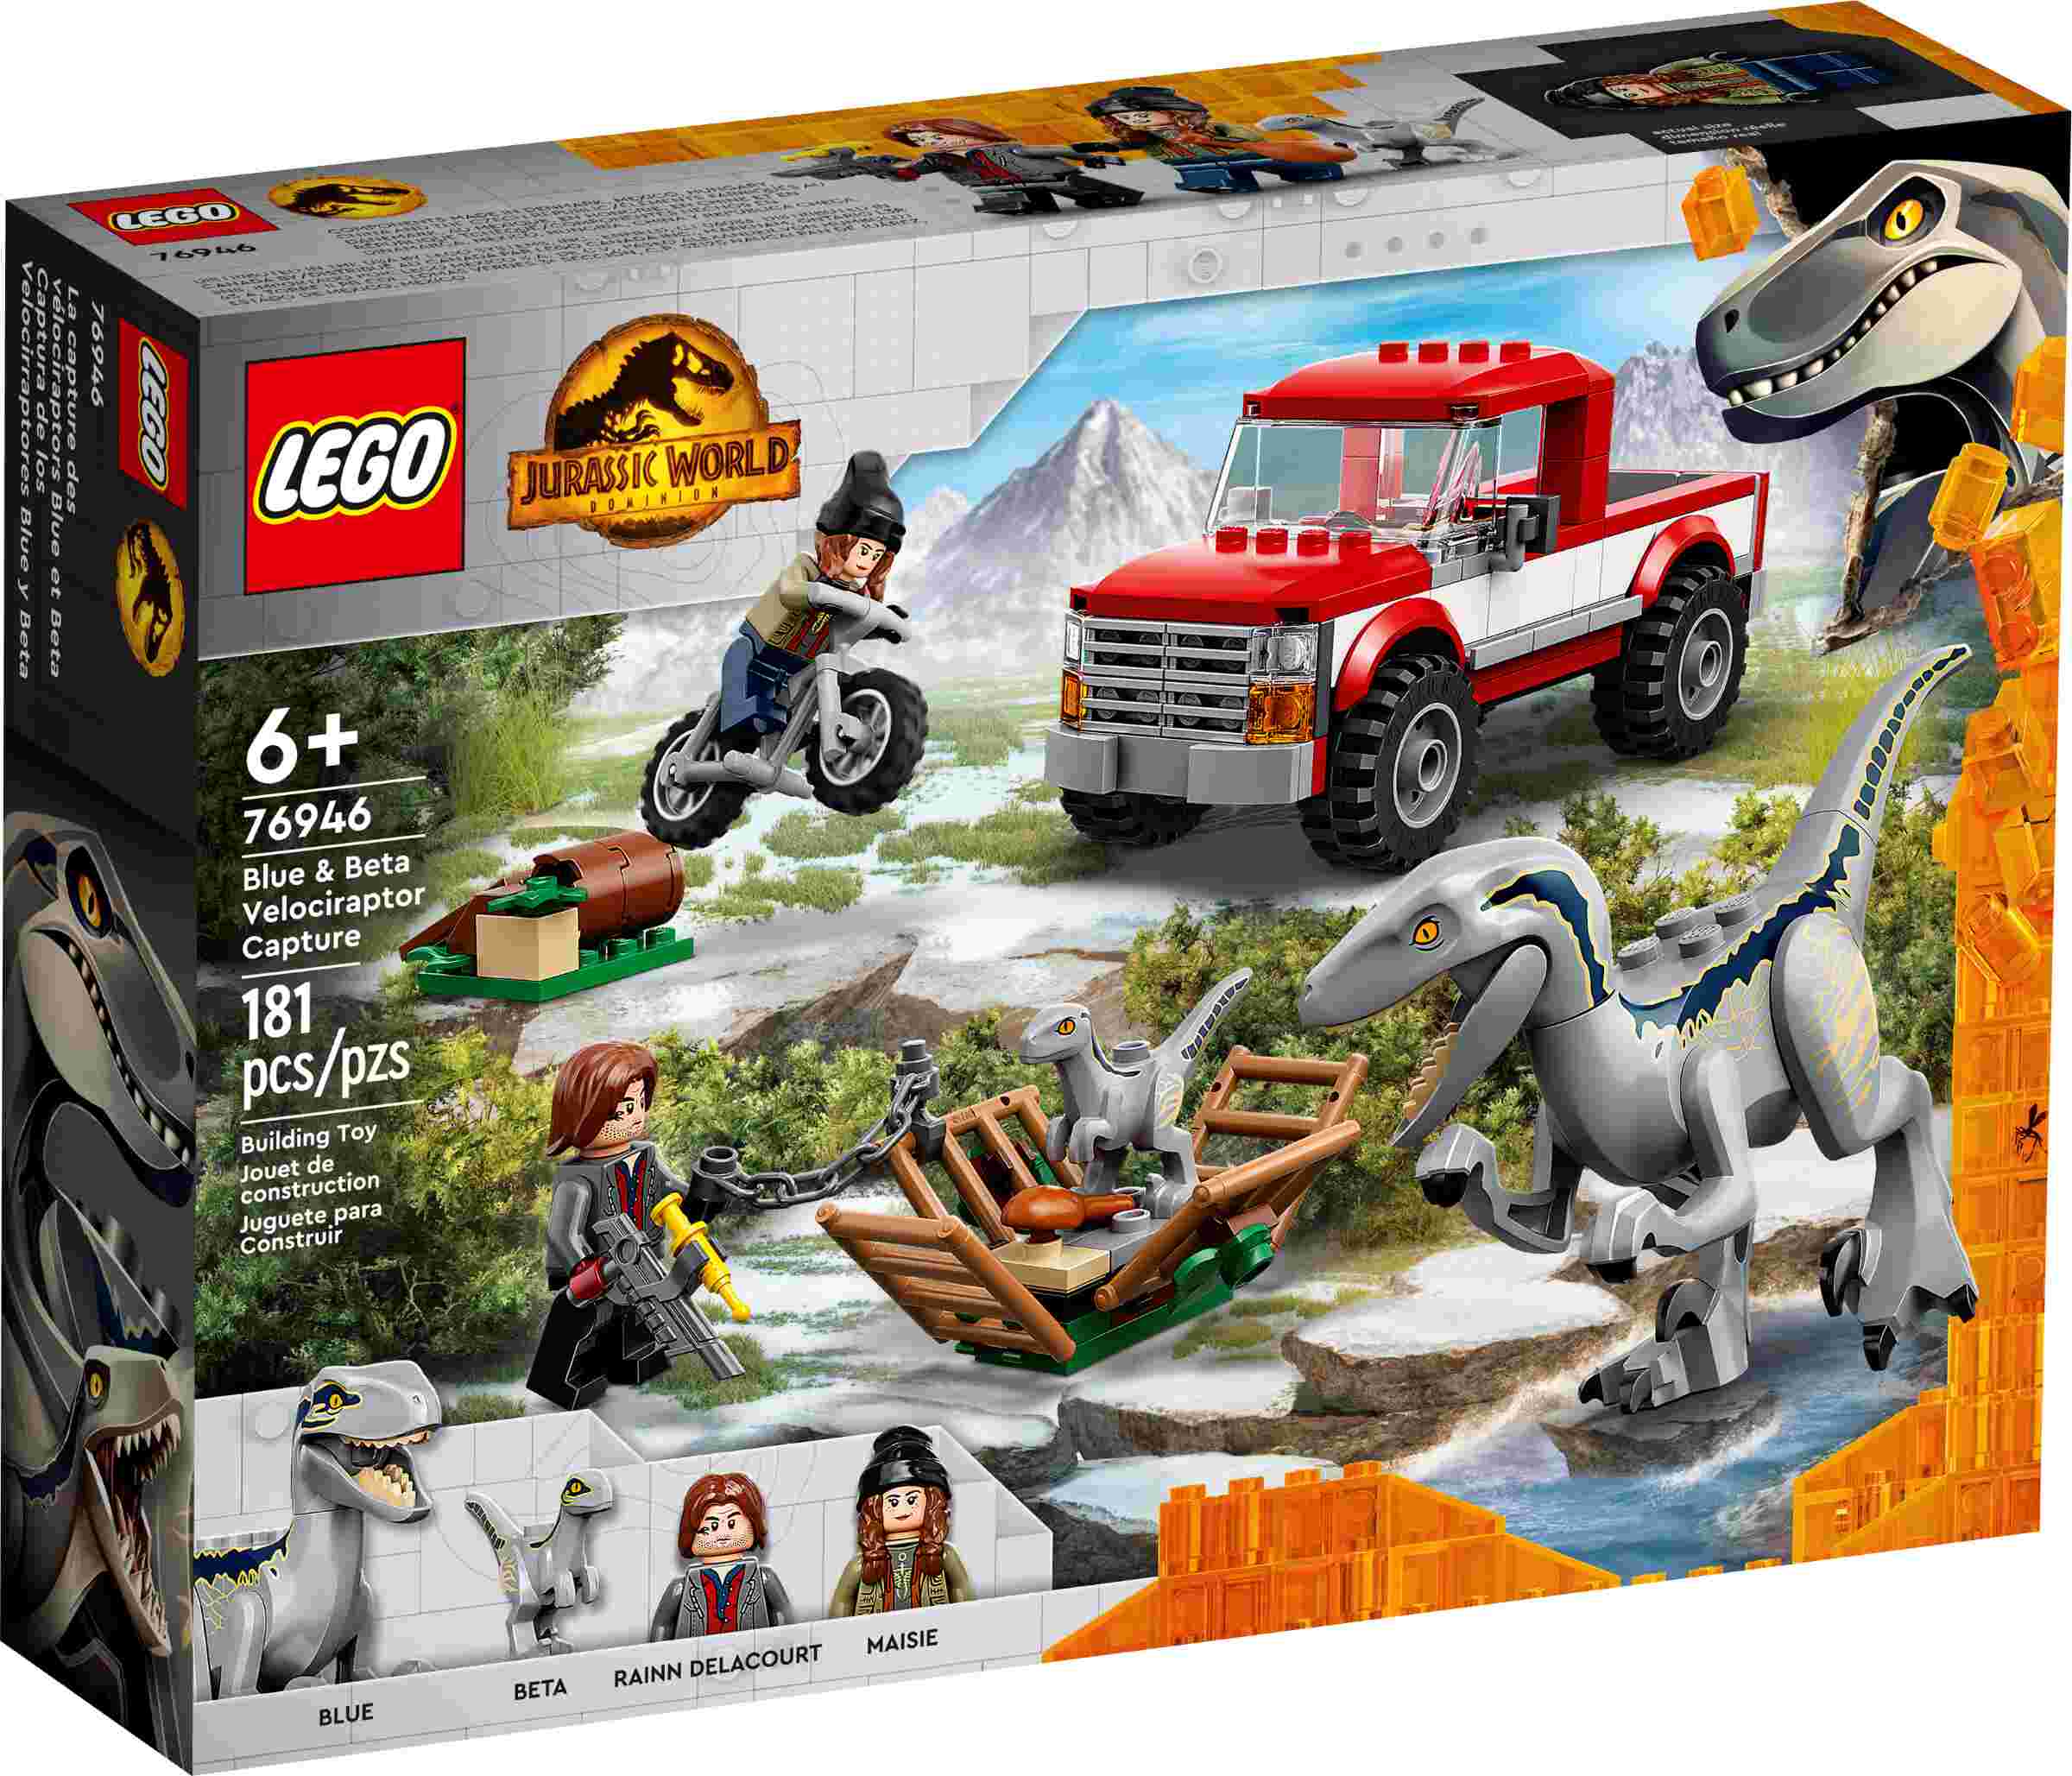 LEGO 76946 Jurassic World Blue & Beta in der Velociraptor-Falle, 2 Dinosaurier